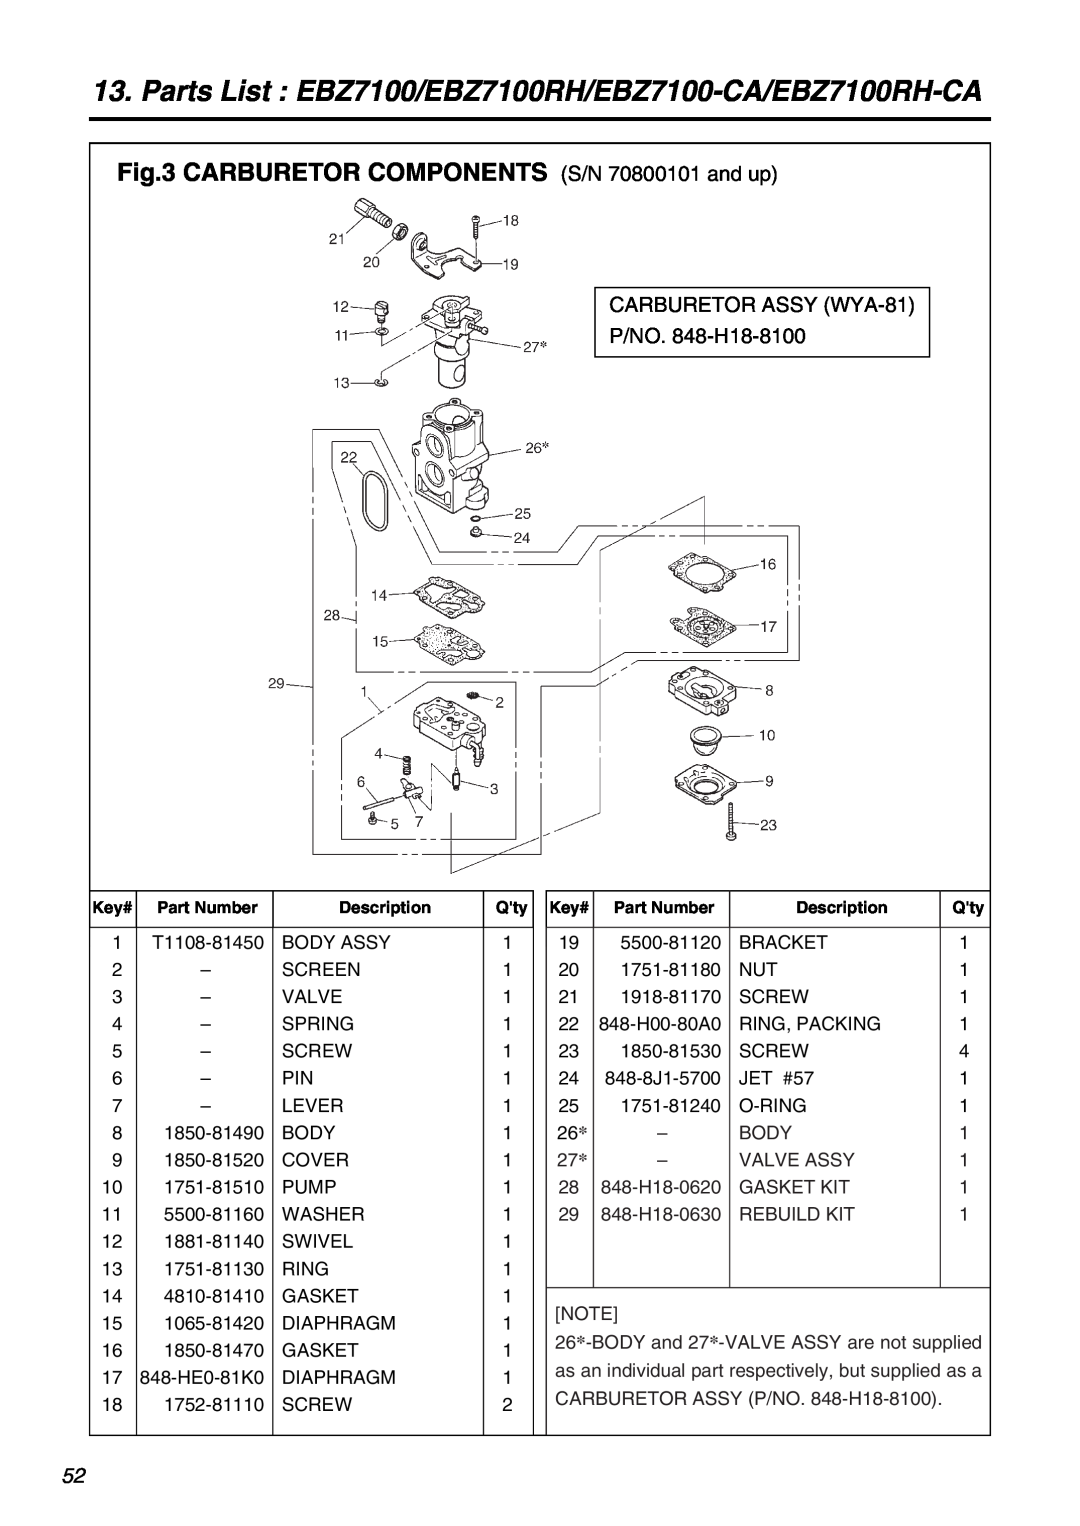 Zenoah manual CARBURETOR COMPONENTS S/N 70800101 and up, Parts List EBZ7100/EBZ7100RH/EBZ7100-CA/EBZ7100RH-CA 